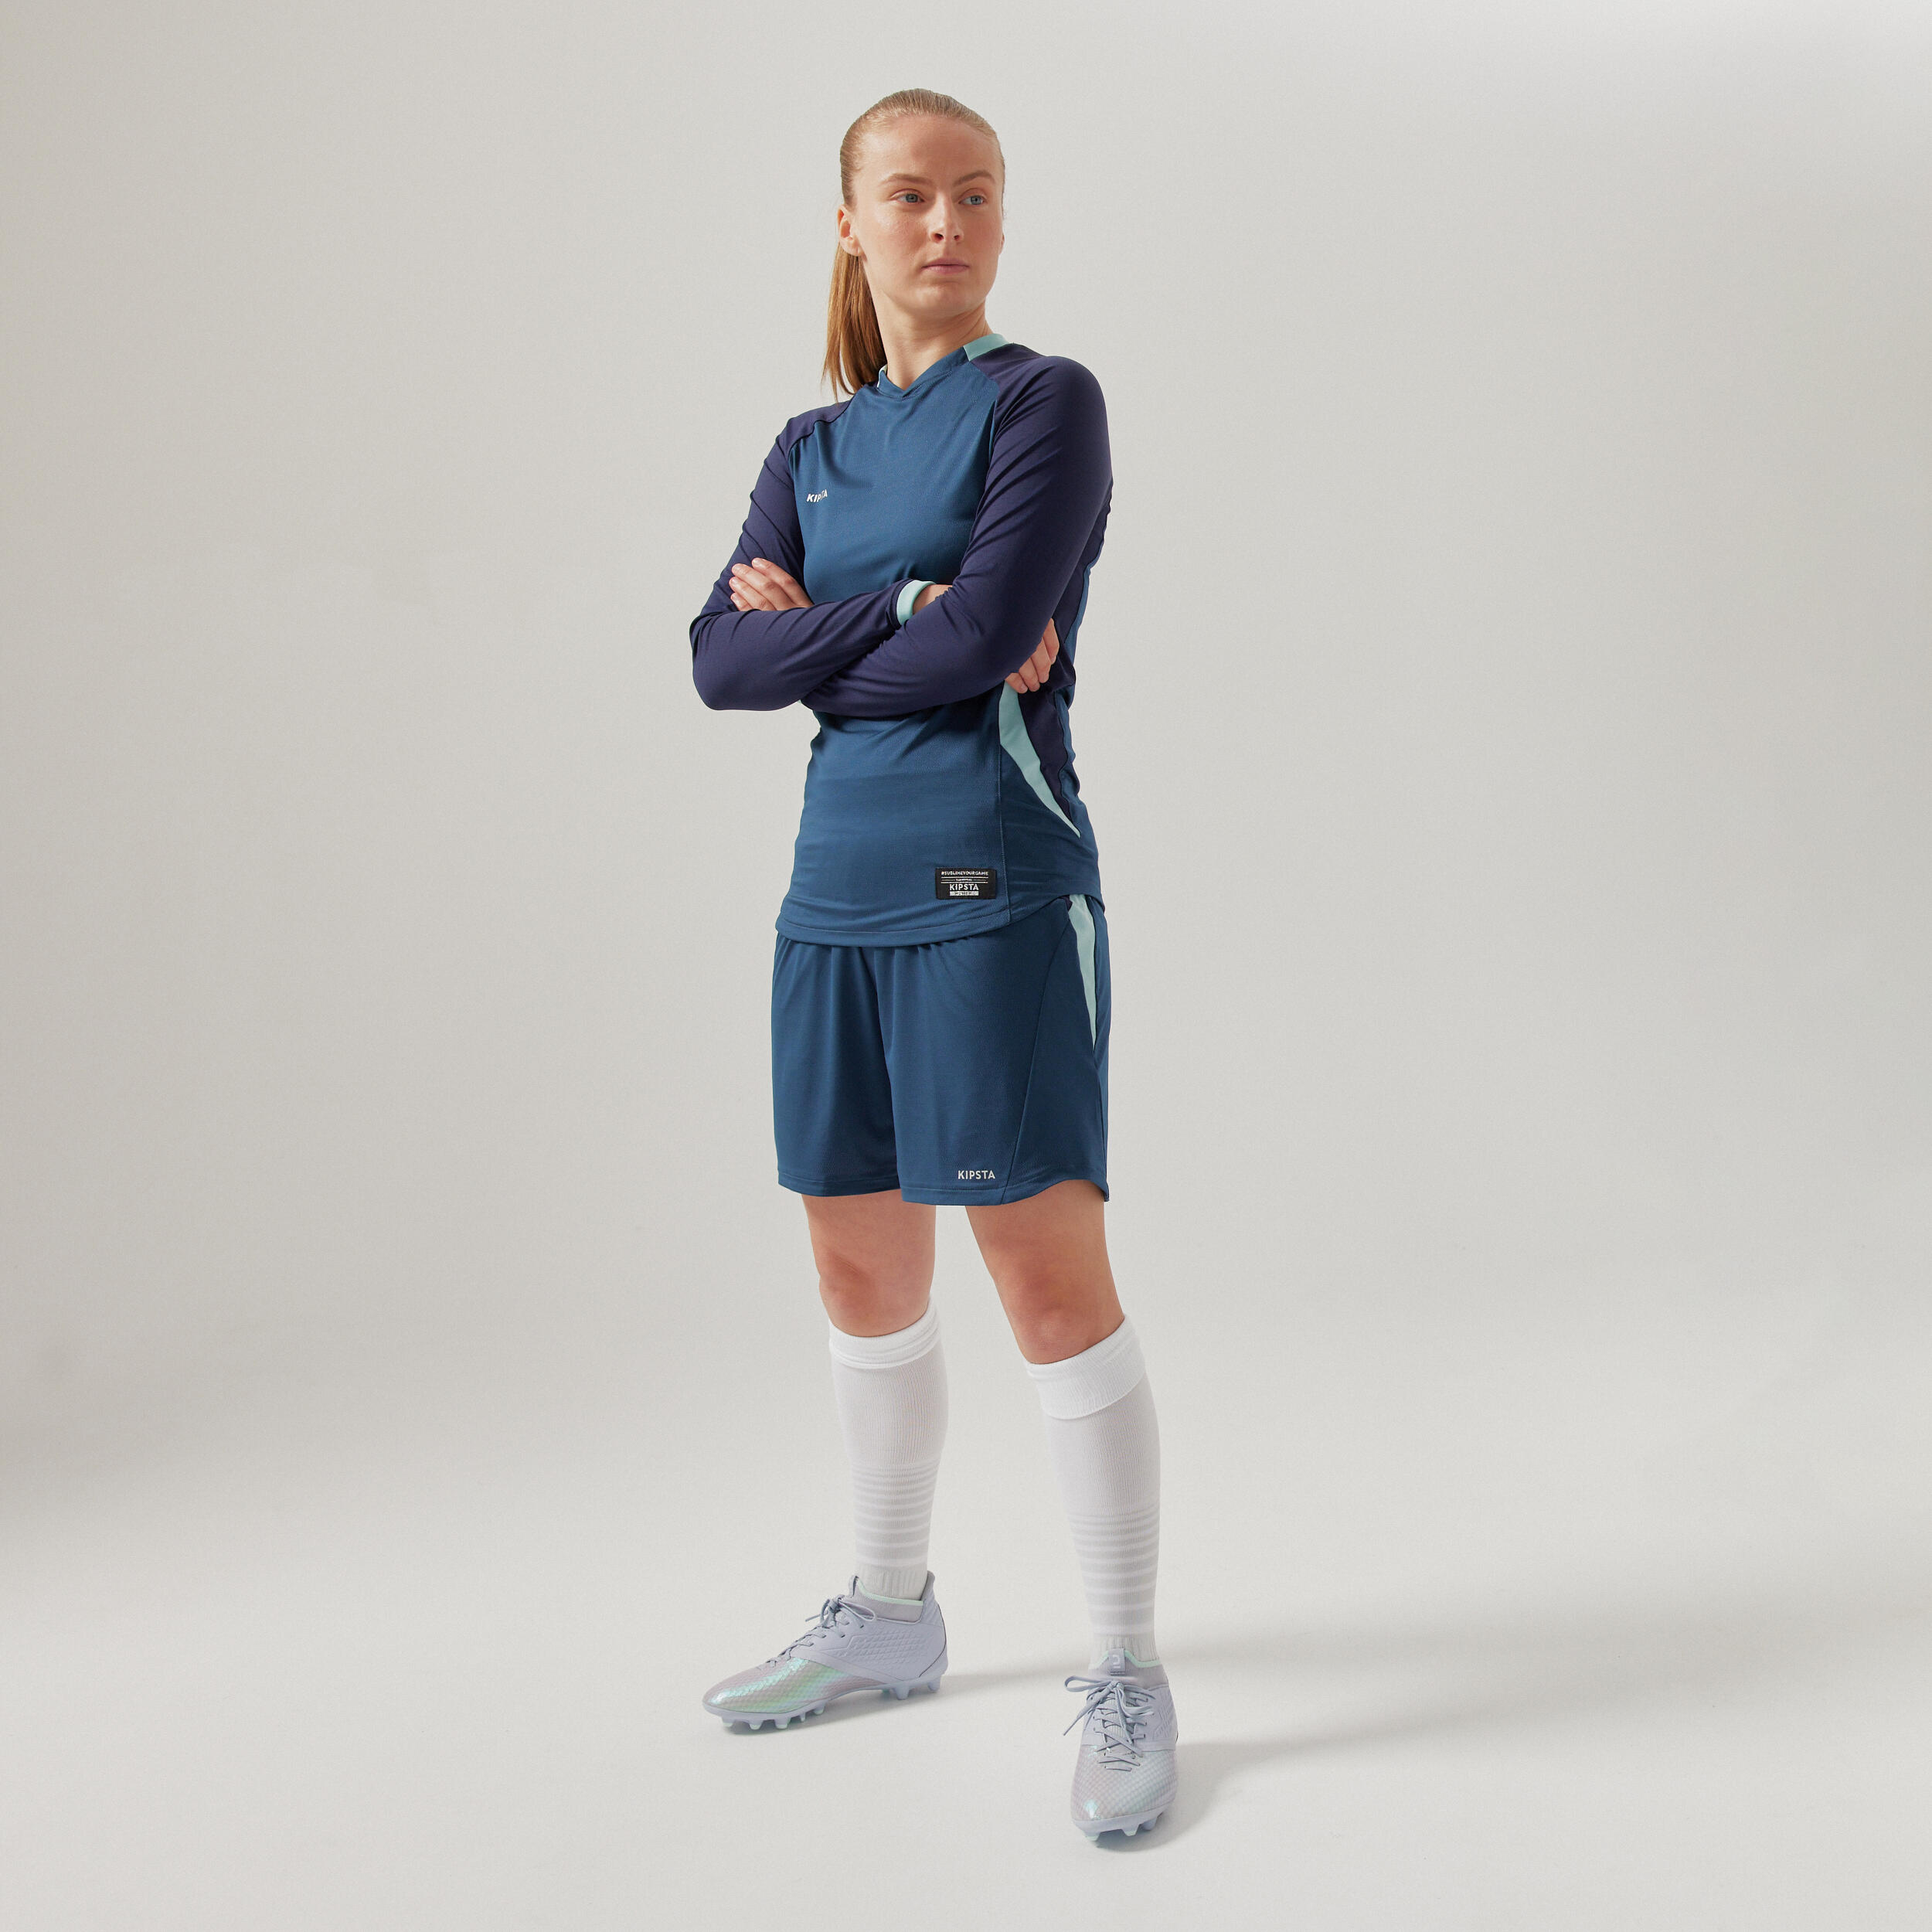 Women's Long-Sleeved Slim-Cut Football Shirt - Blue 5/8